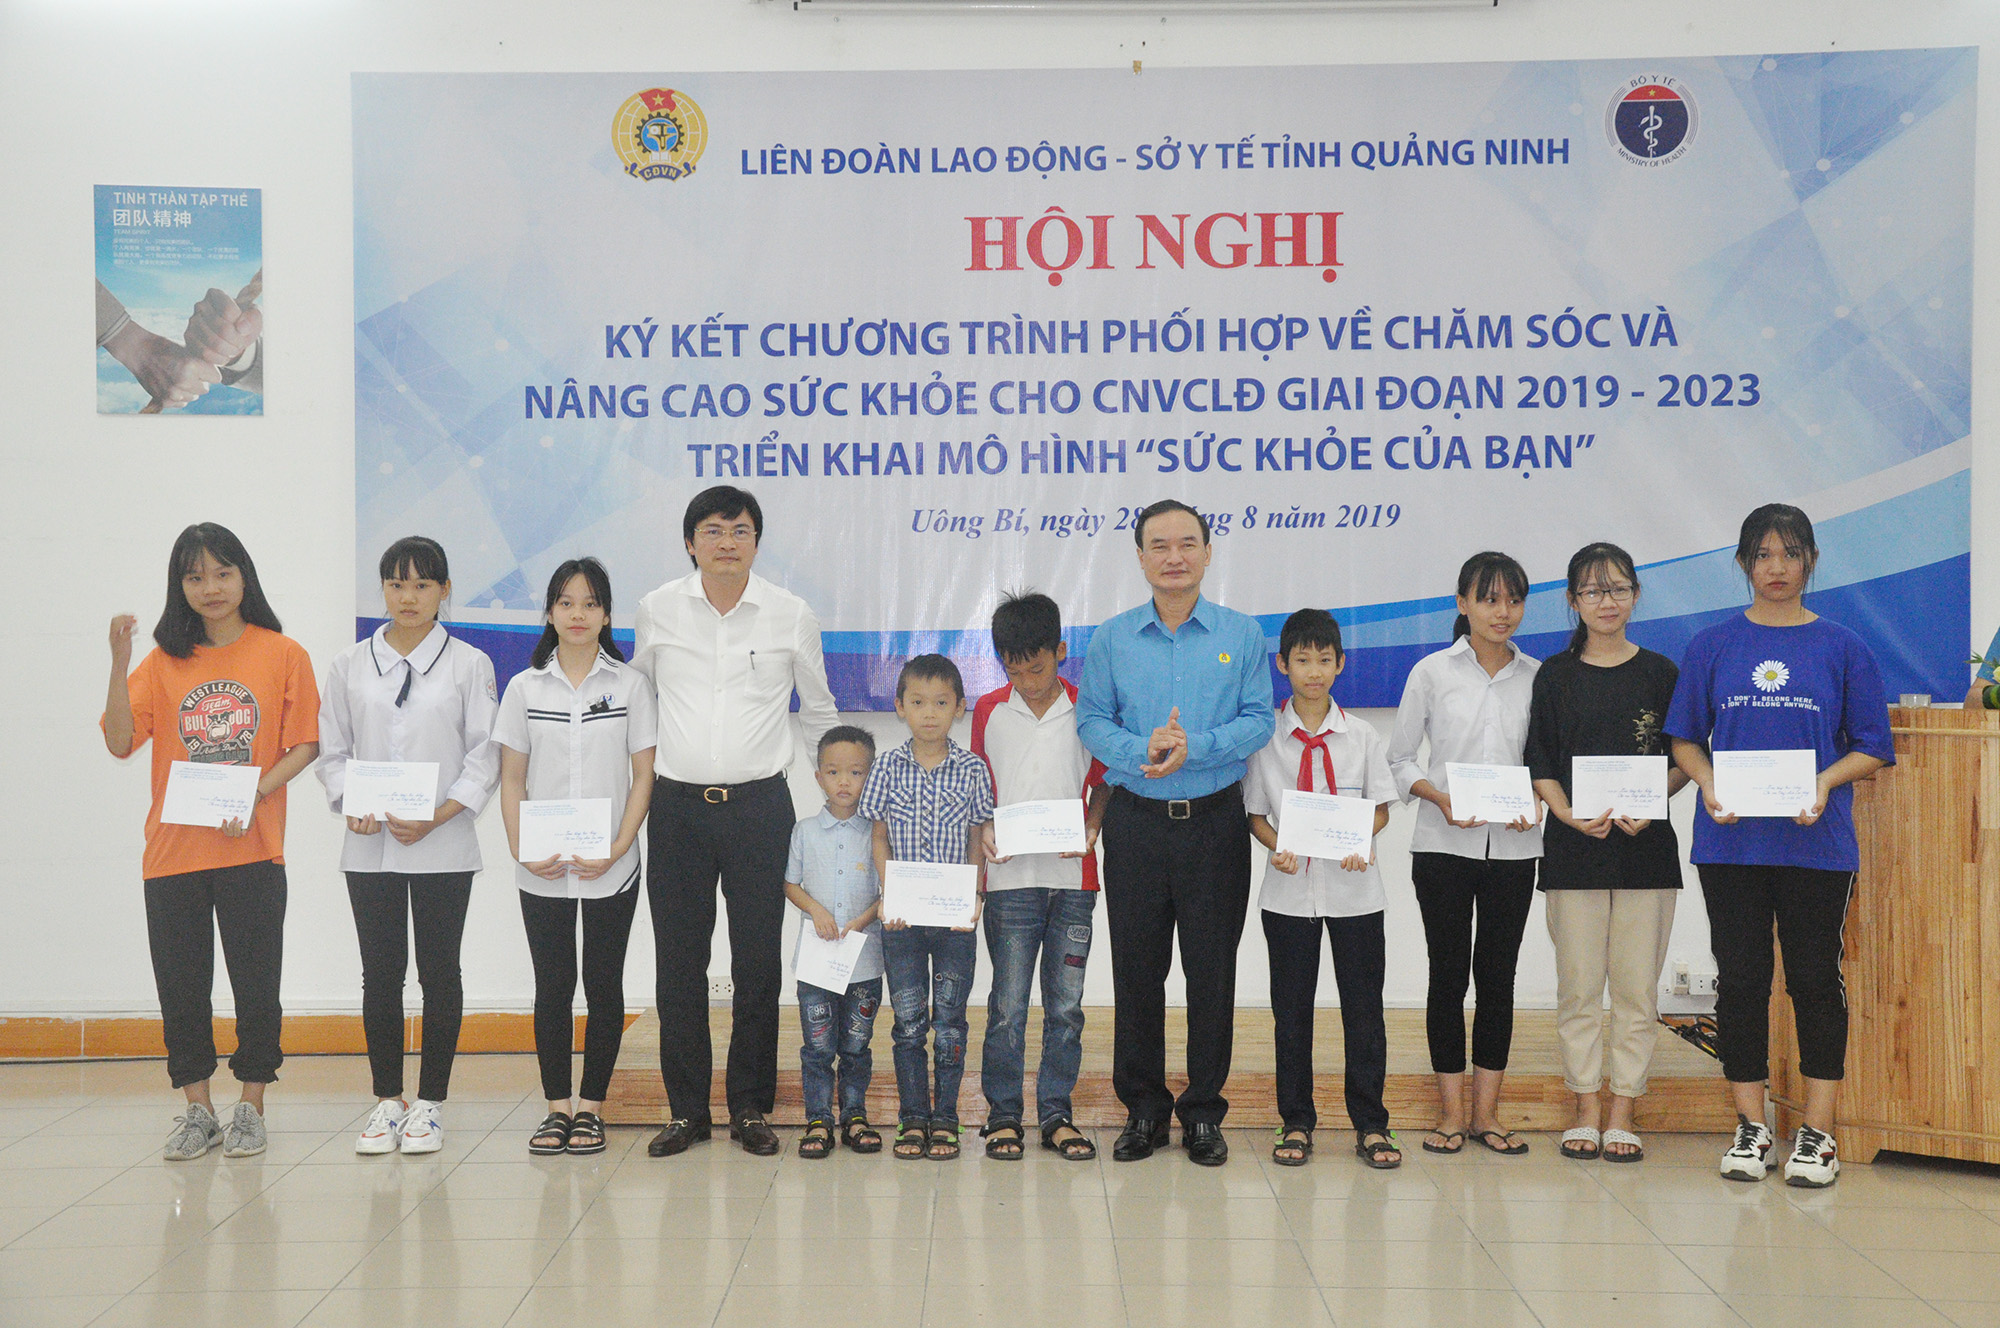 10 con CNLĐ có hoàn cảnh khó khăn được nhận hỗ trợ từ Quỹ Tấm lòng vàng, Tổng LĐLĐ Việt Nam.